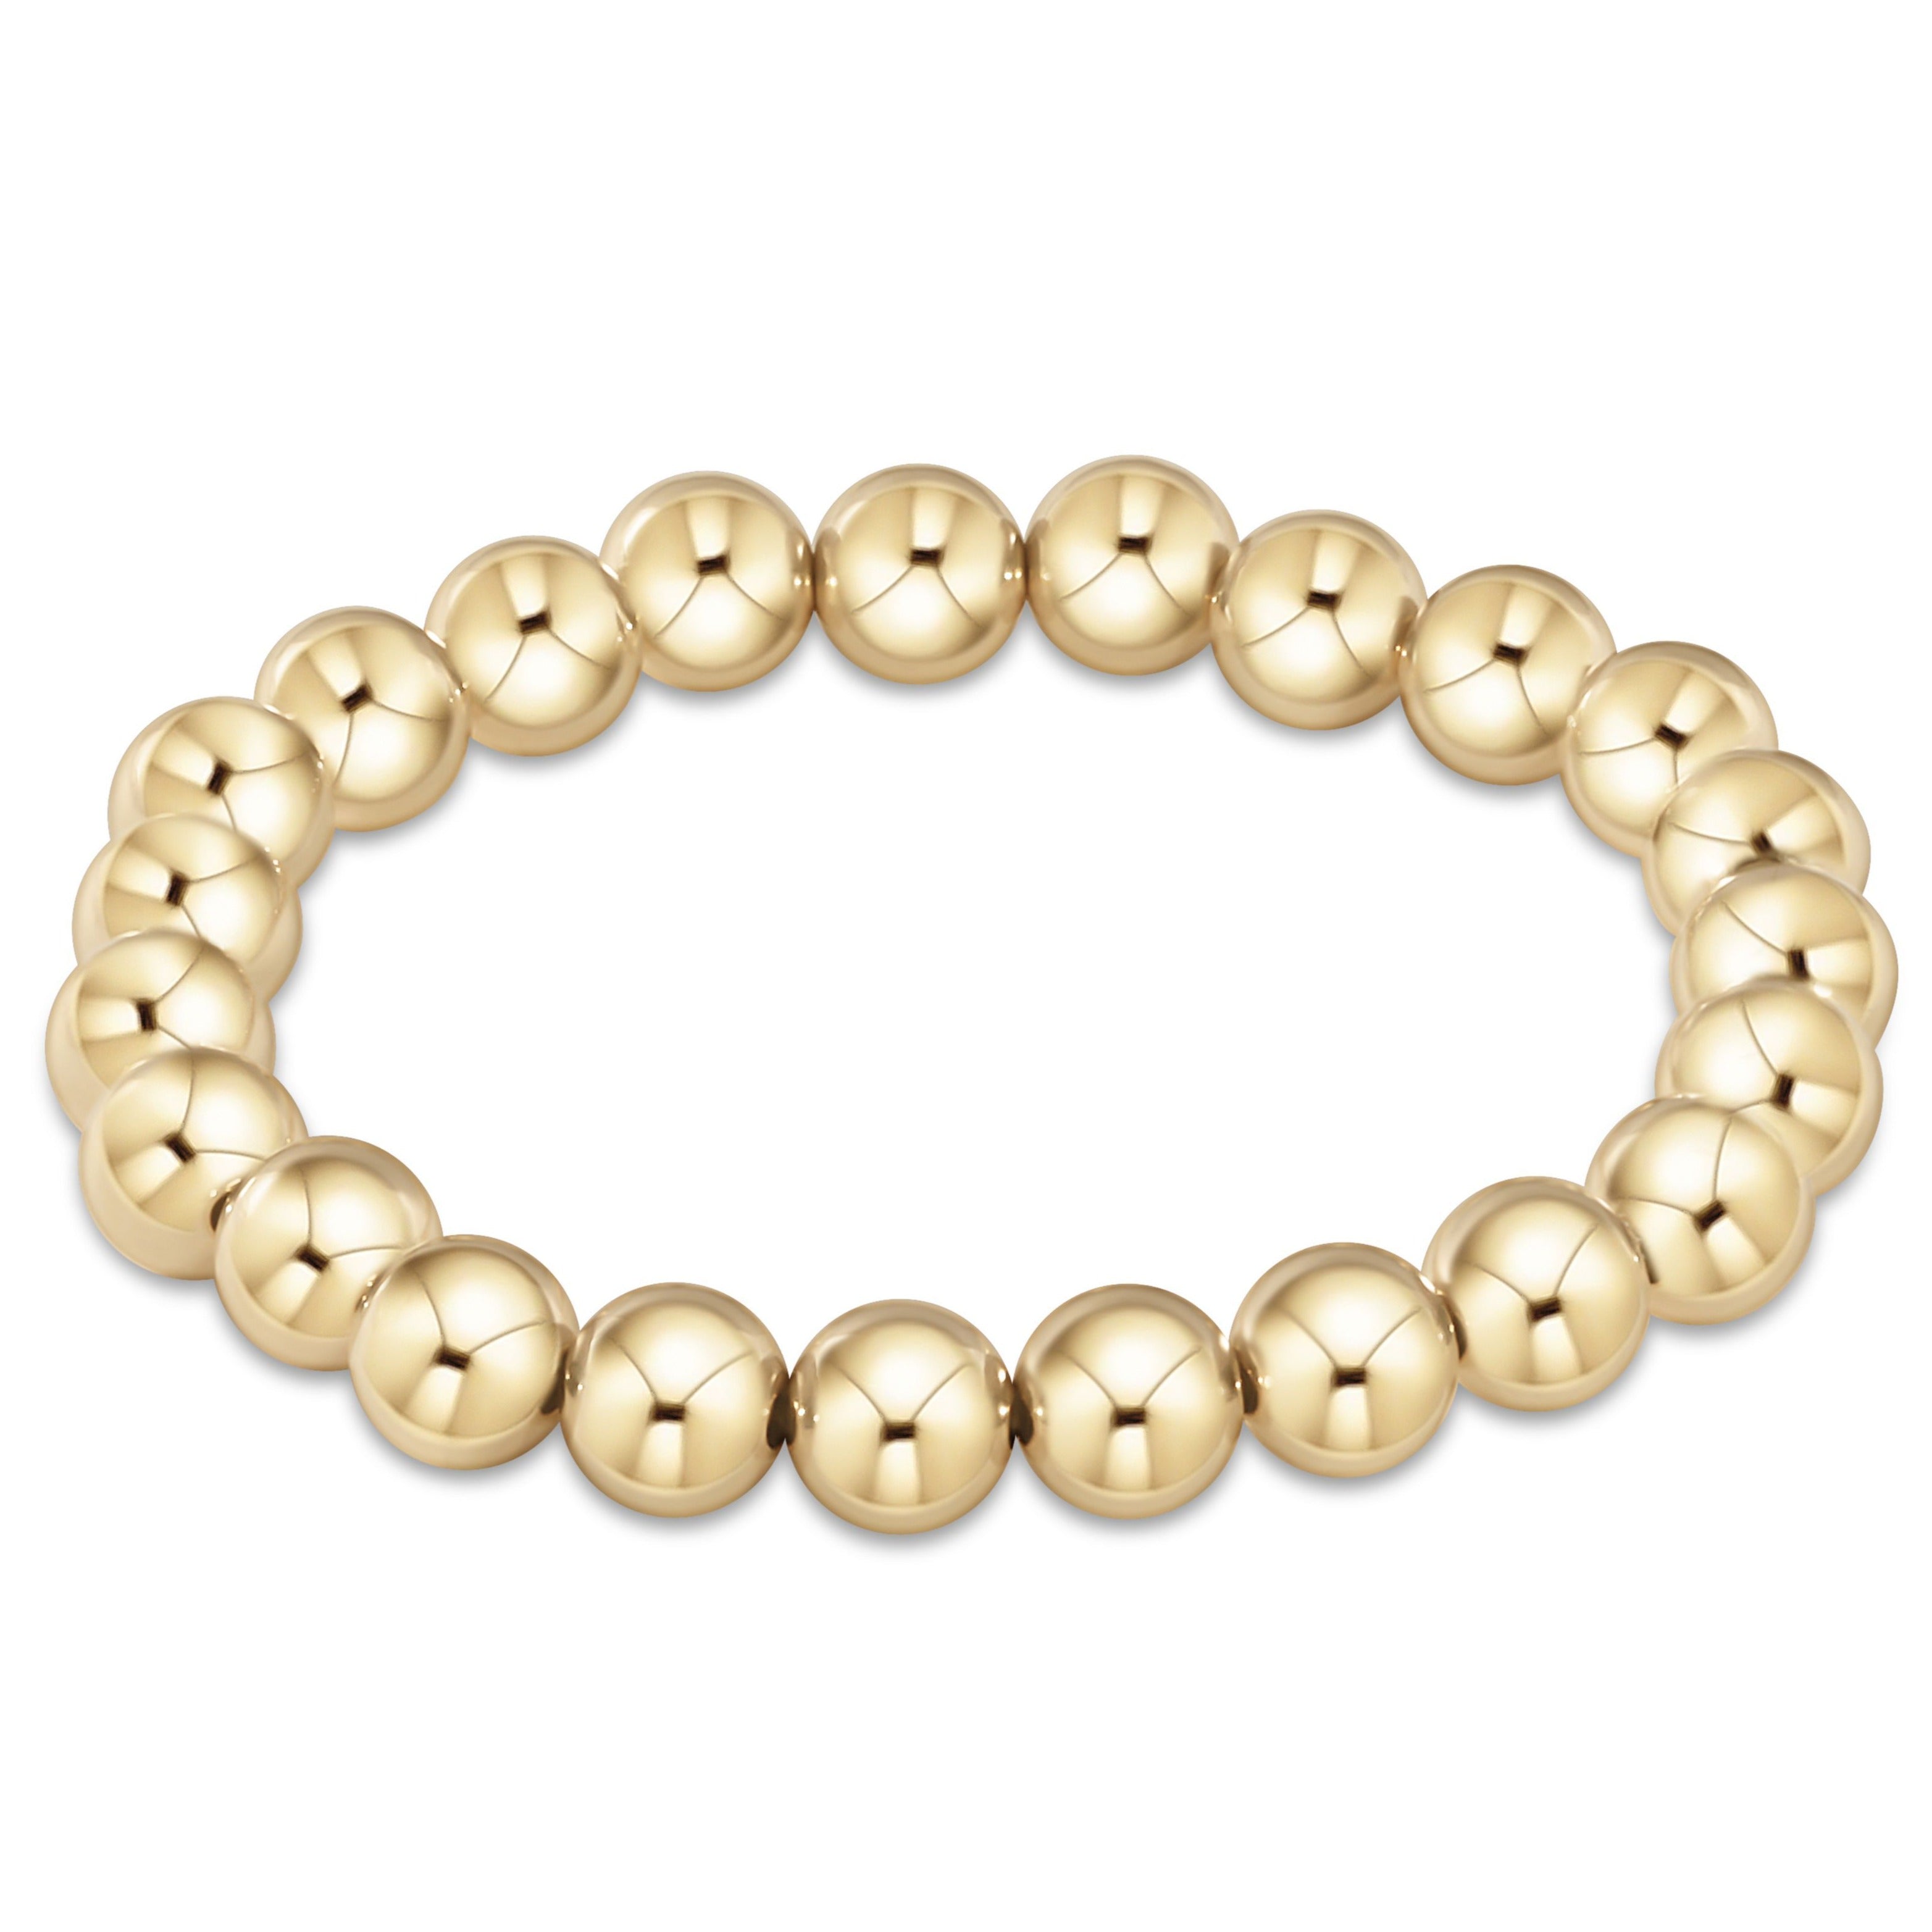 Garnet Skinny Stacker Bracelet (6mm Beads) X-Small - 6 / Gold